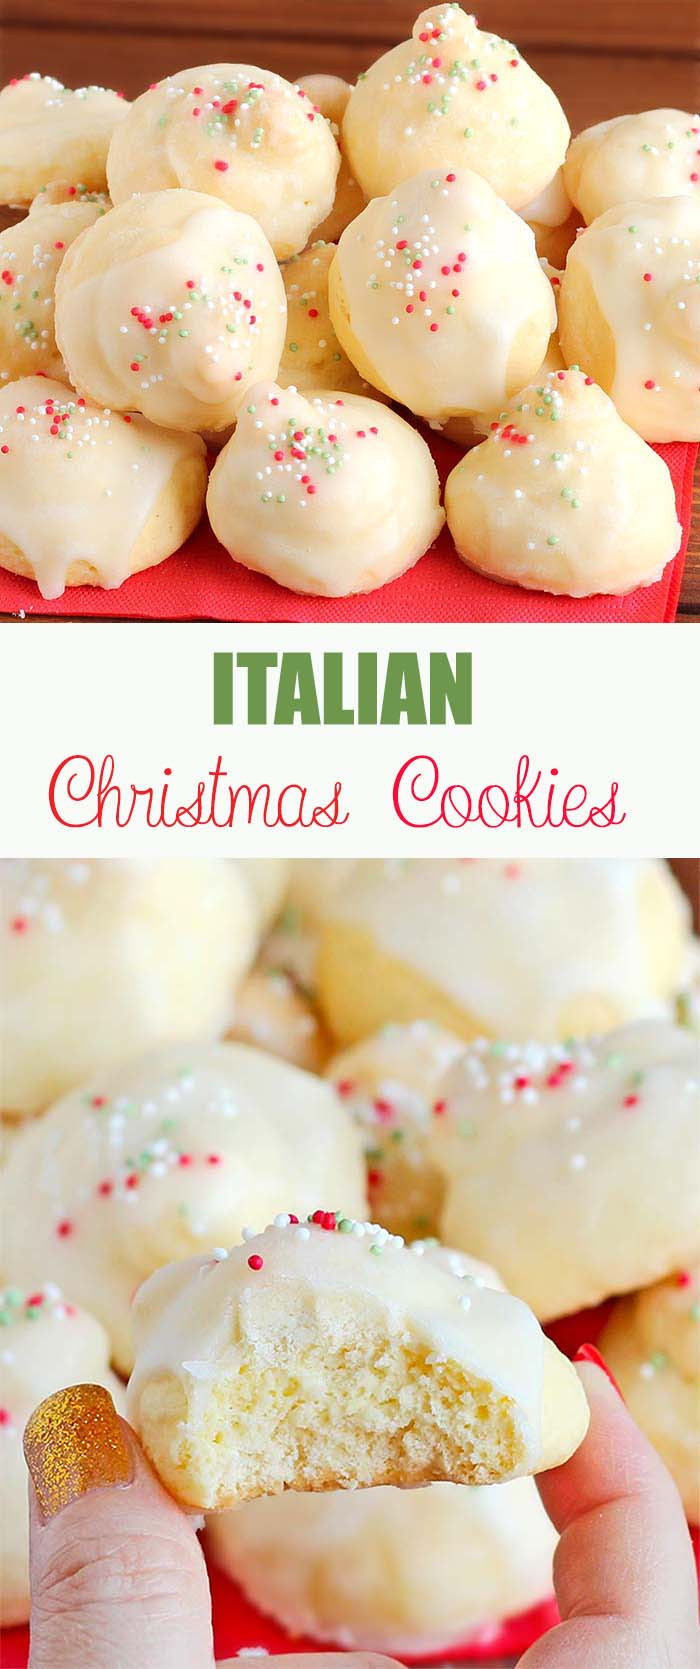 Italian Christmas Cookies
 Italian Christmas Cookies Cakescottage